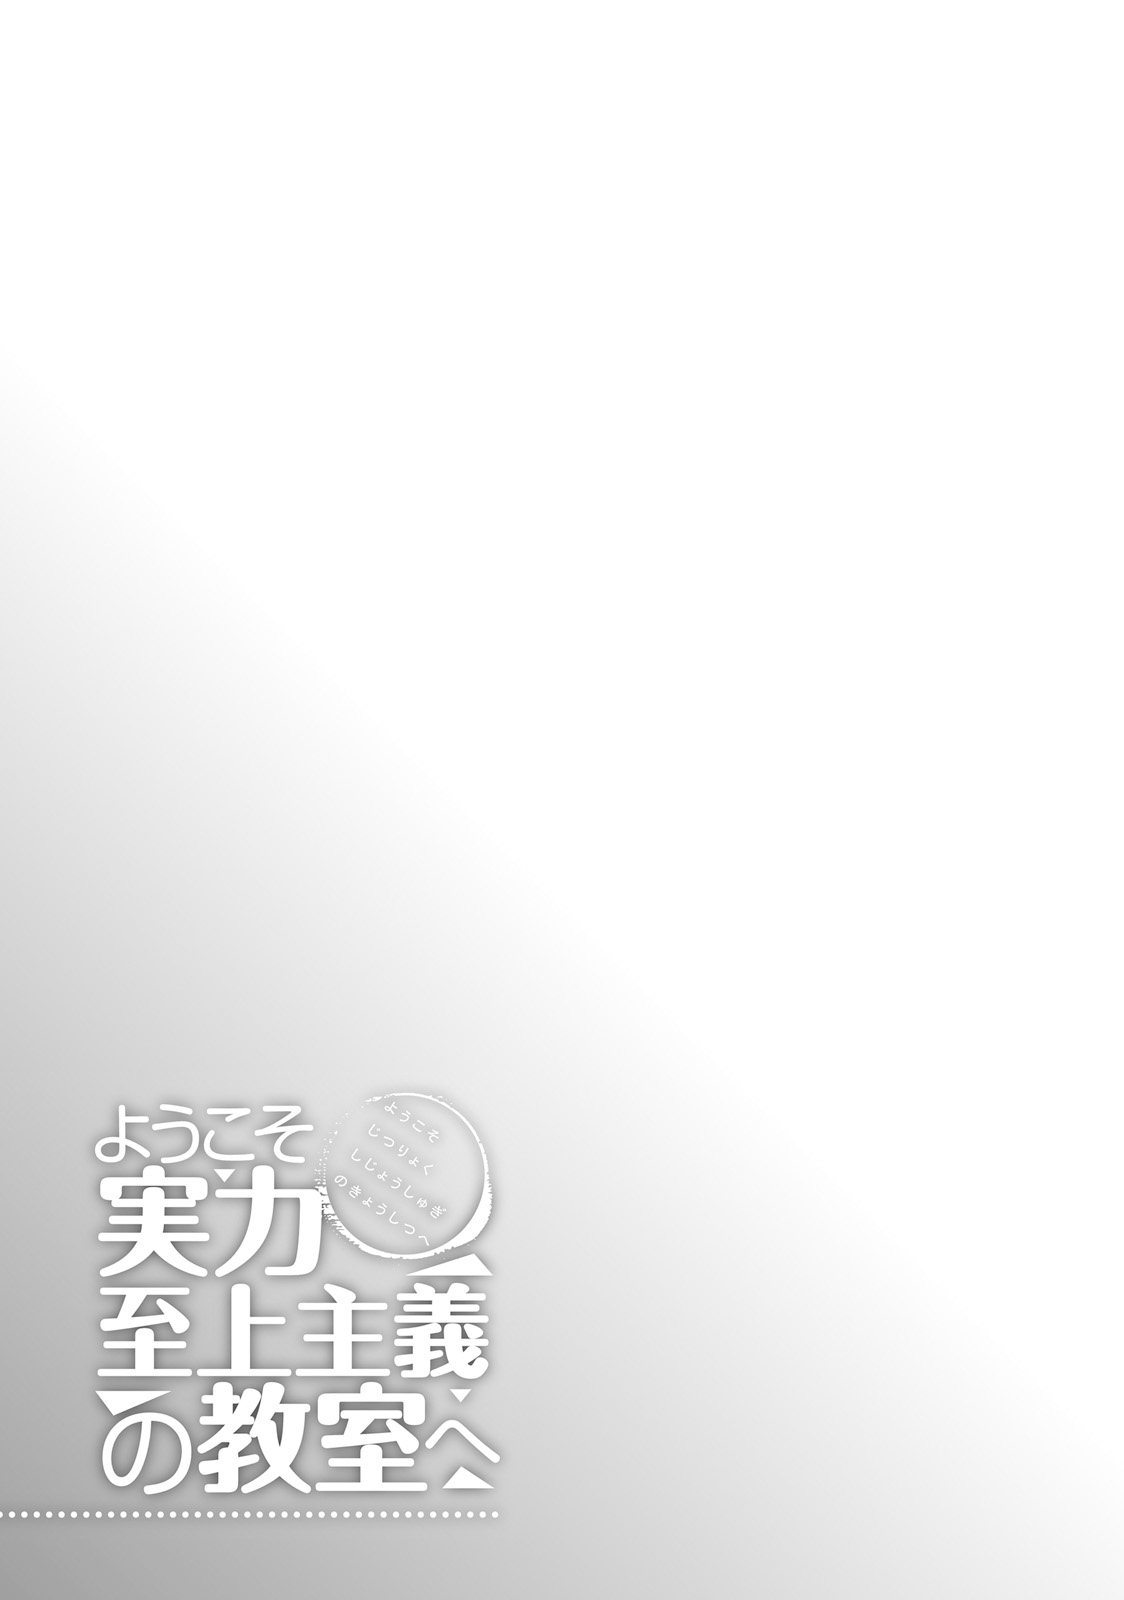 Youkoso Jitsuryoku Shijou Shugi no Kyoushitsu e Vol. 4 Ch. 17 Room 17